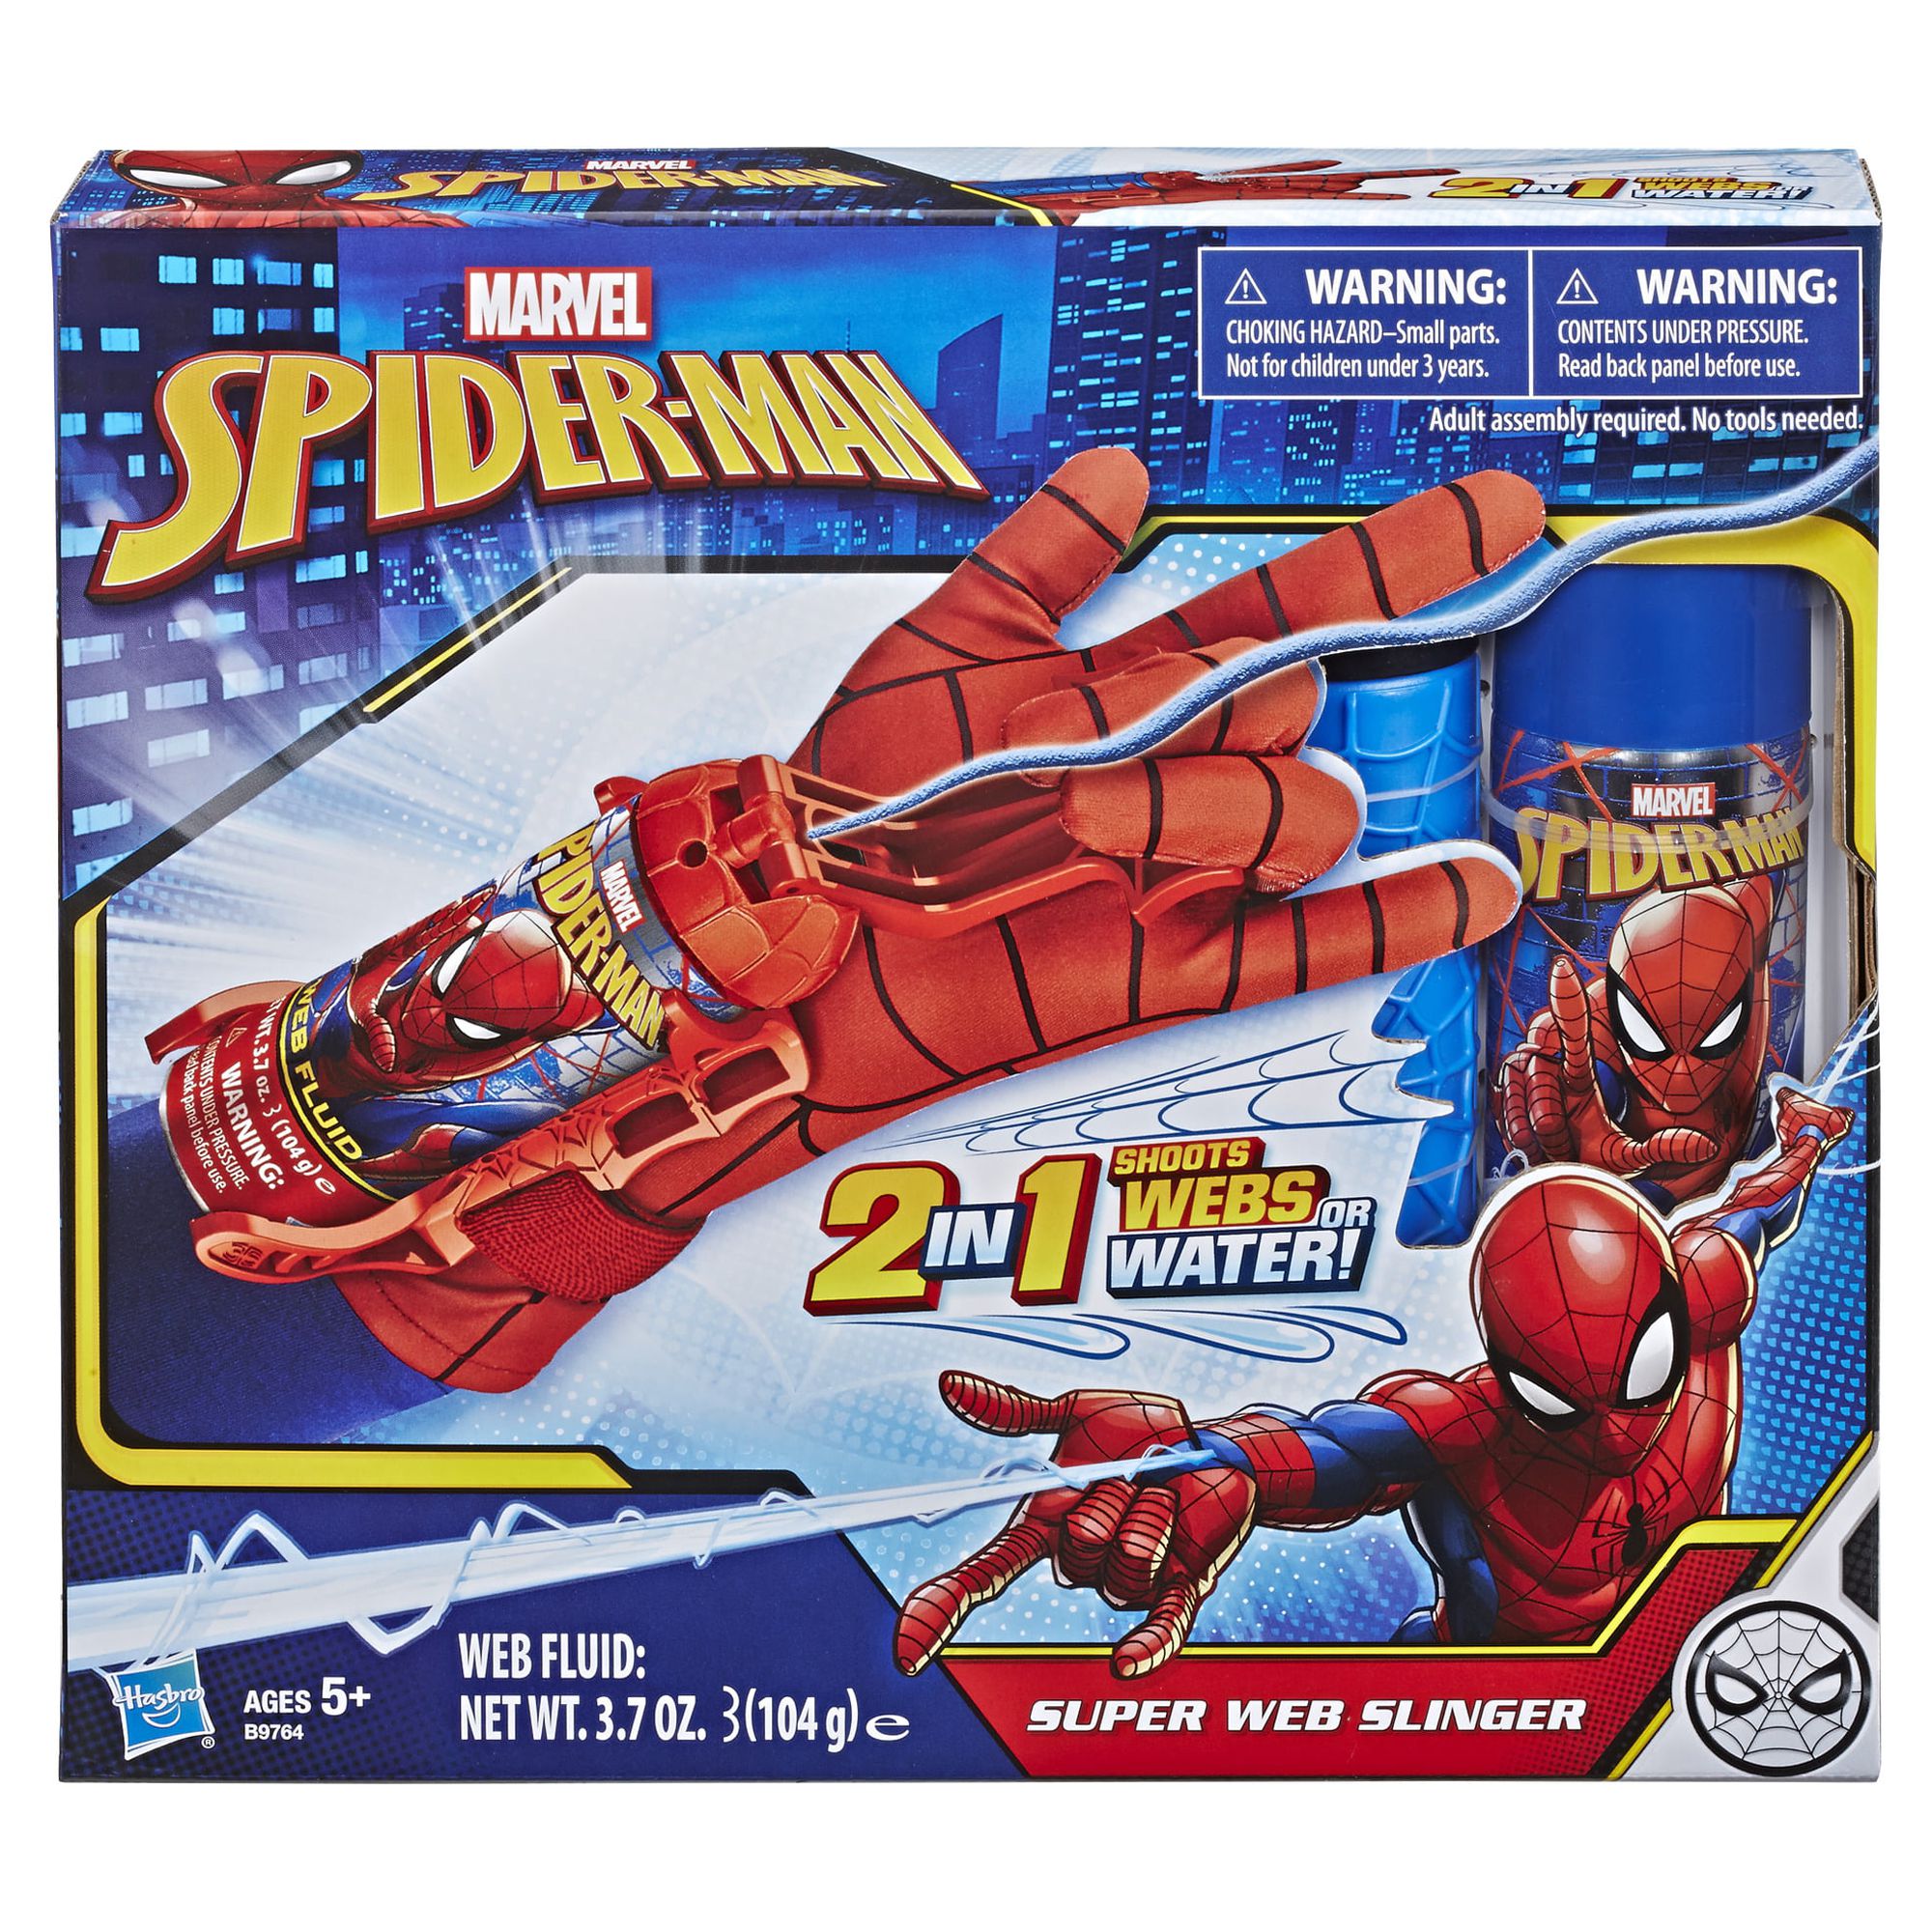 Marvel Spider-Man Super Web Slinger - image 3 of 4